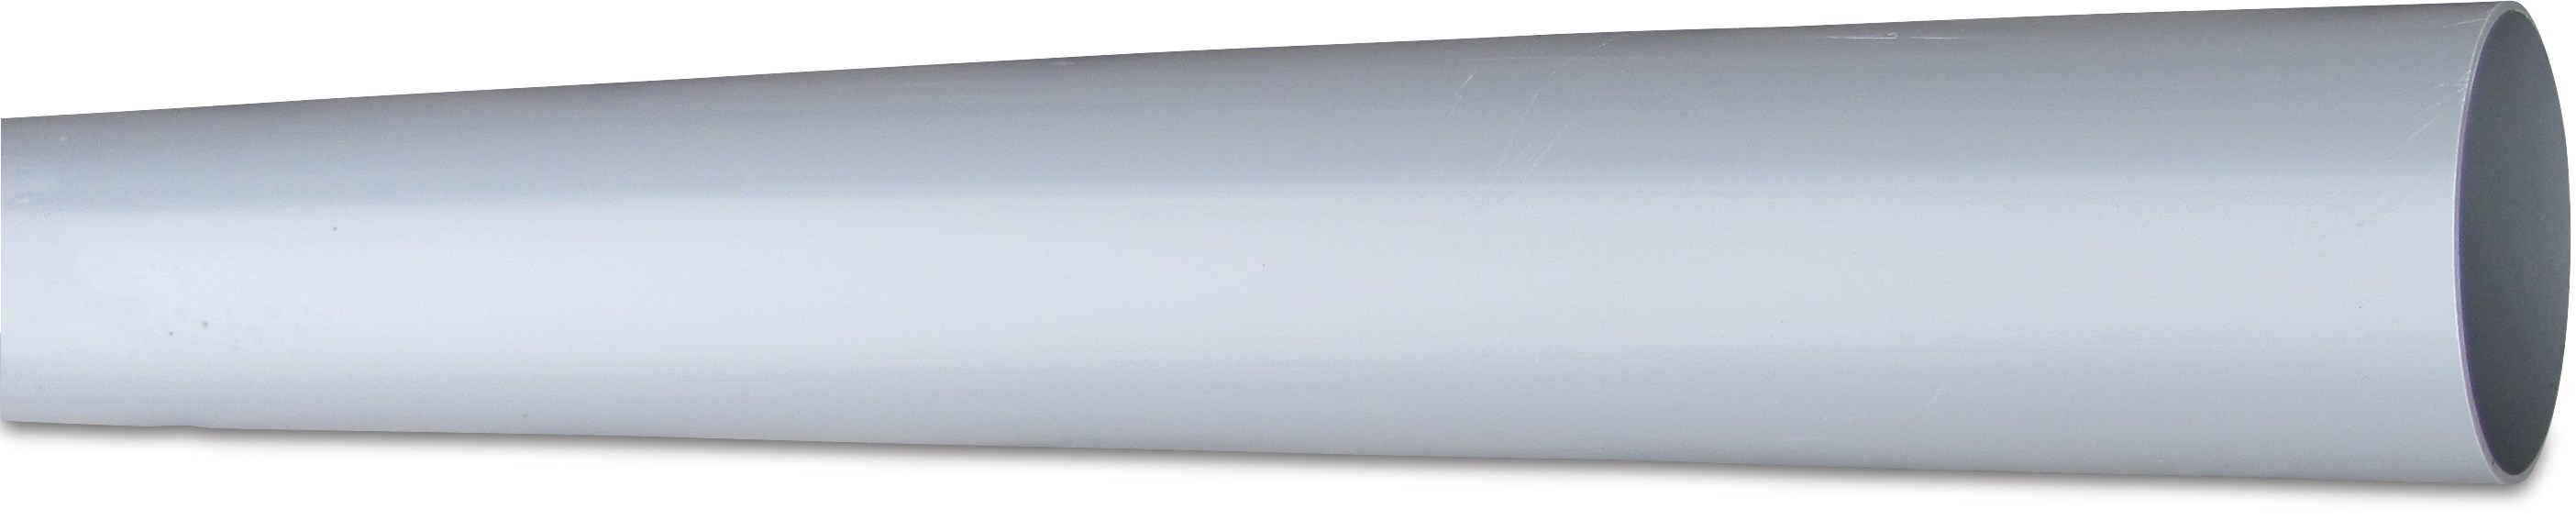 PVC-U REWA Rohr SN1 5,55m